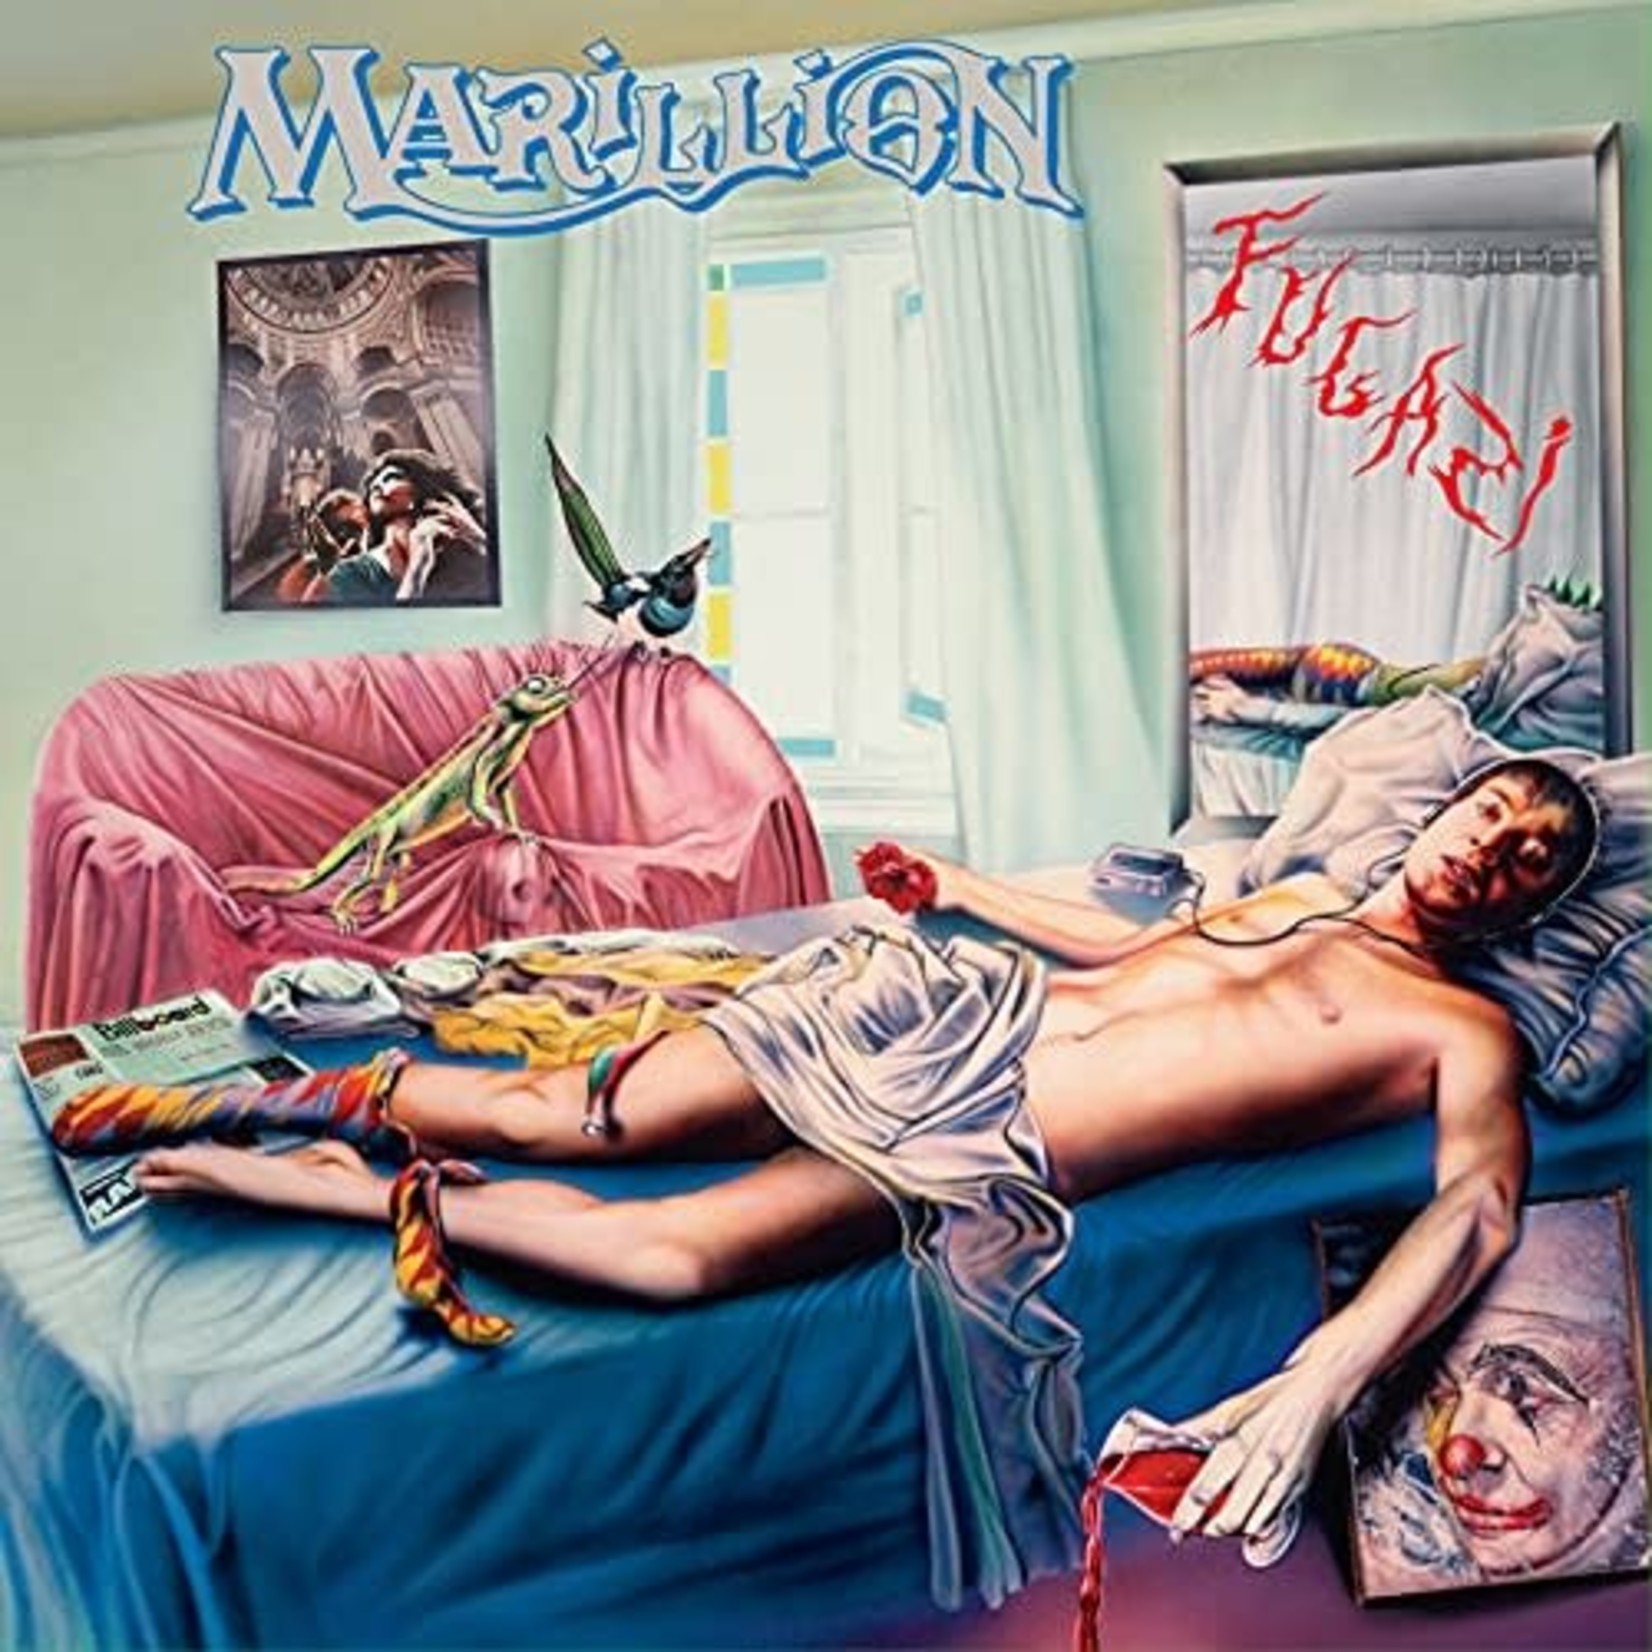 [New] Marillion - Fugazi (deluxe edition)